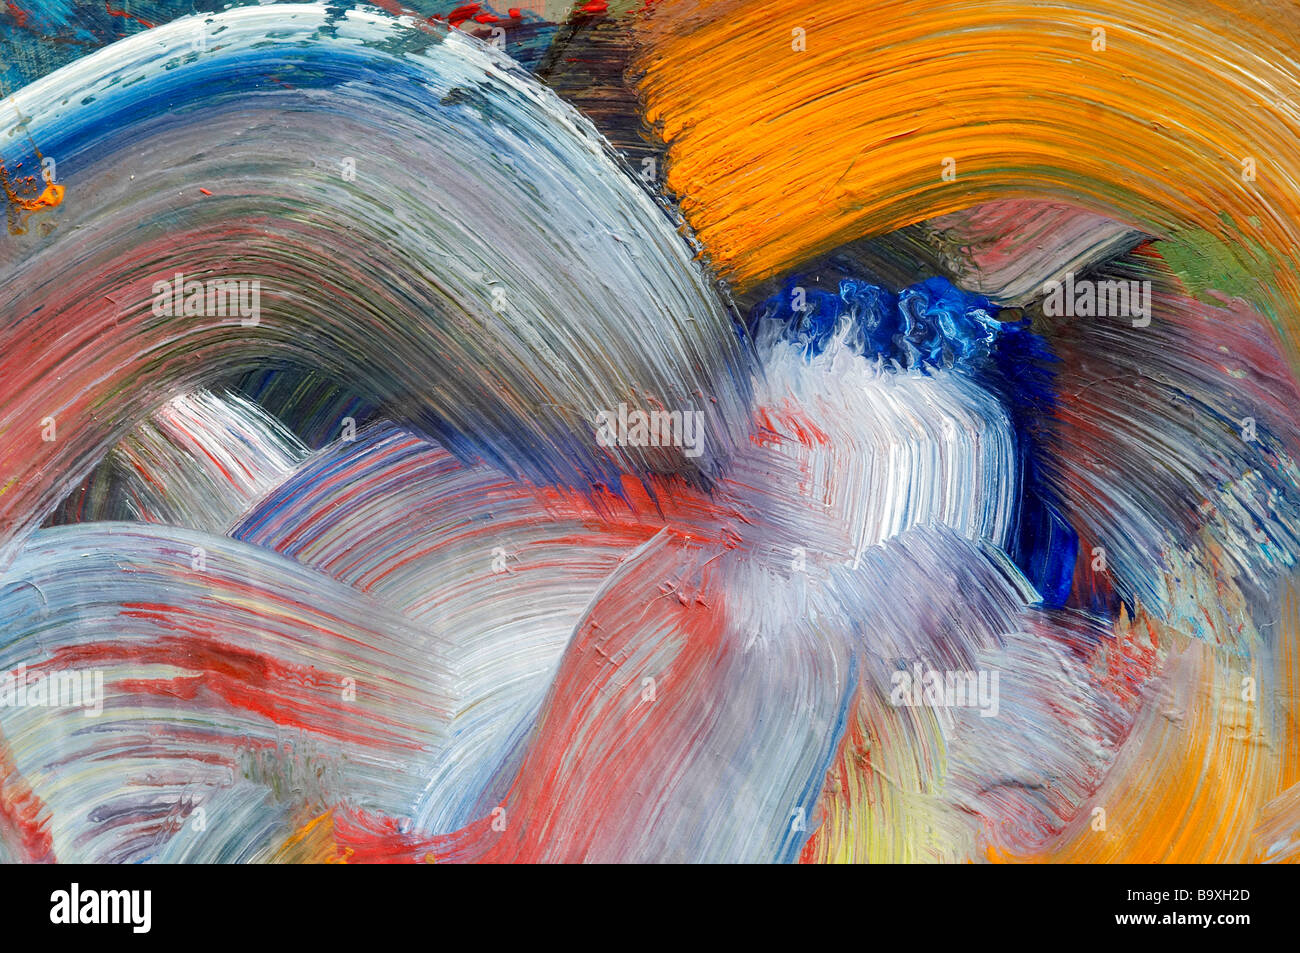 Extreme close-up de coups de pinceau - exécuter l'artisanat - couleurs Banque D'Images